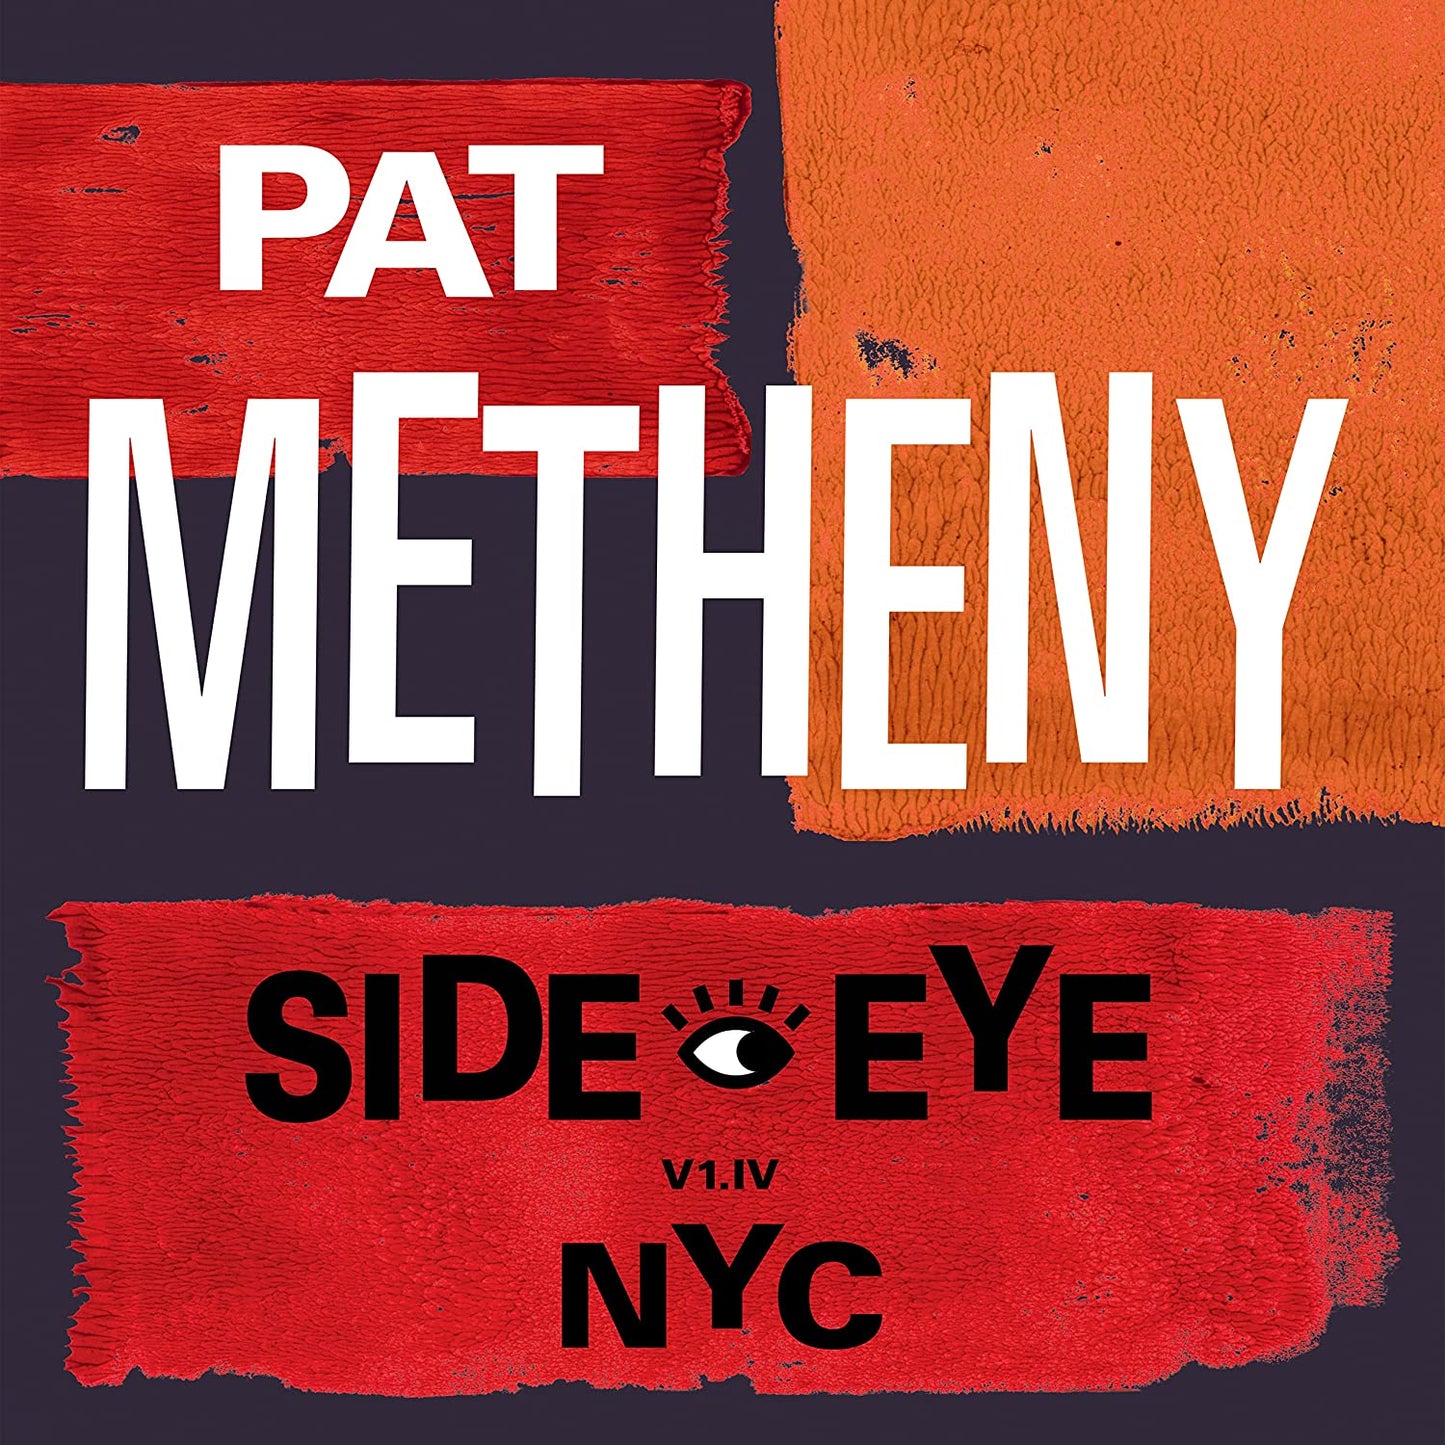 Pat Metheny - Side-Eye NYC V1.IV - 2LP